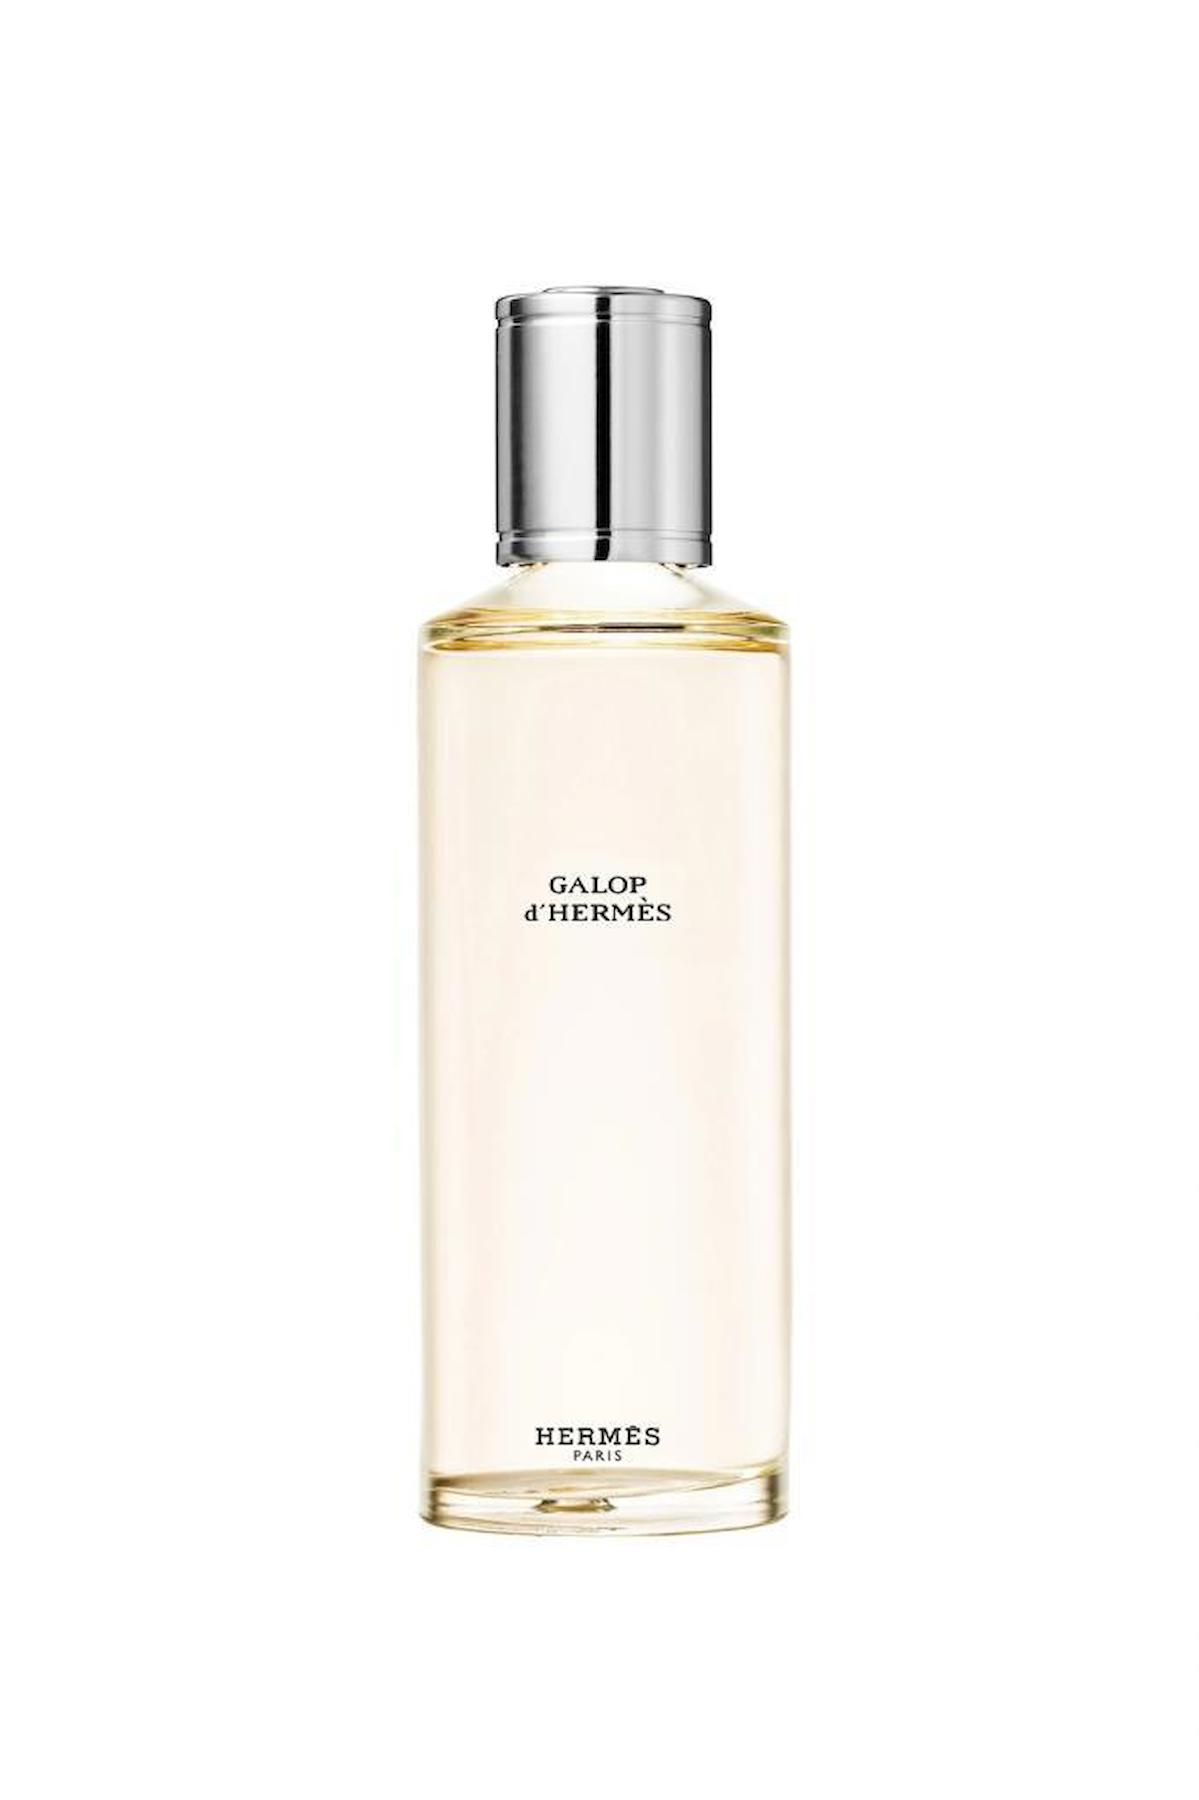 Hermes Galop D'Hermes Pure Parfu EDP Ayva-Safran Kadın Parfüm 125 ml